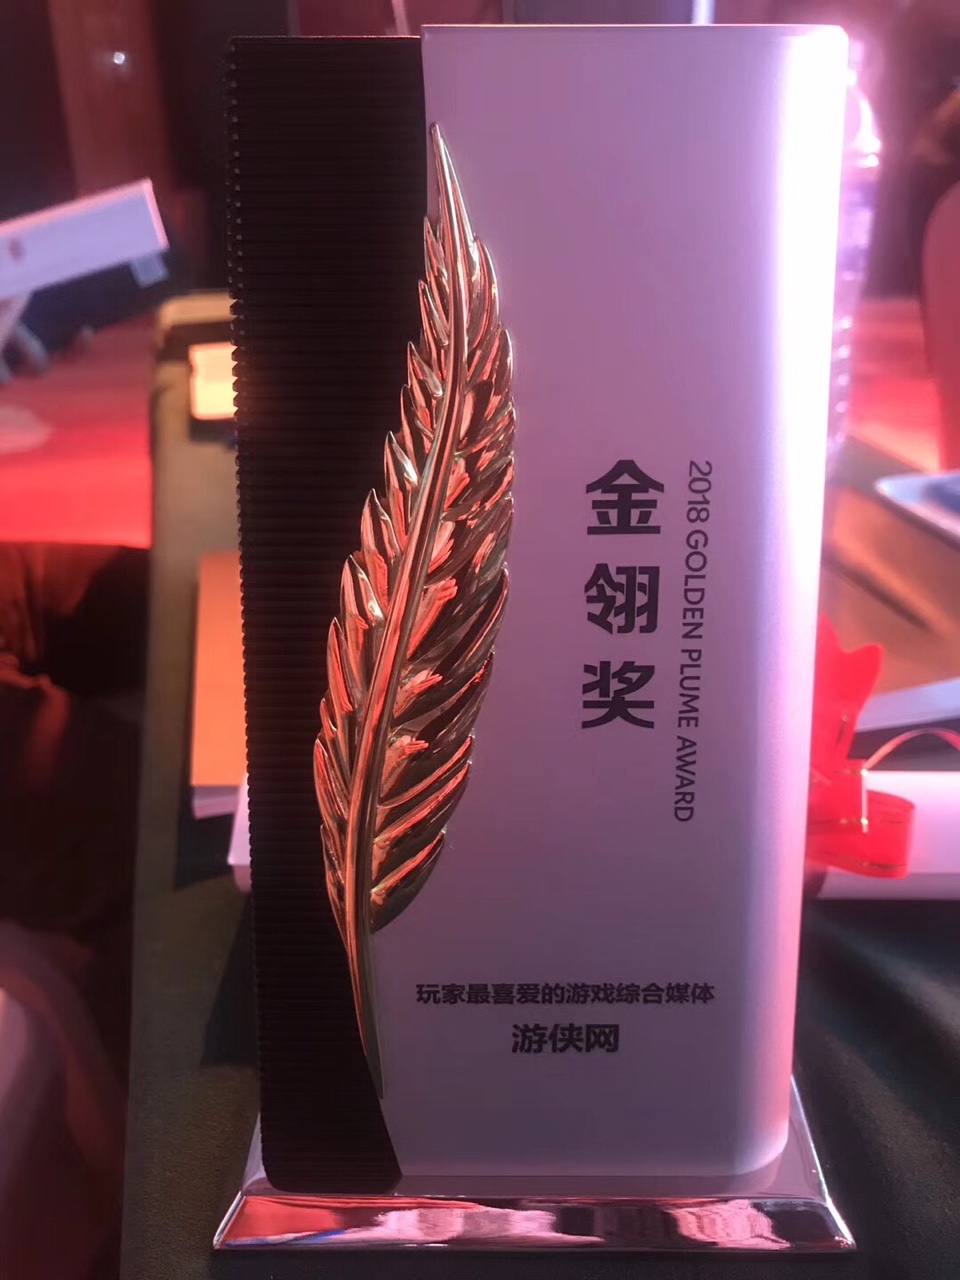 中国游戏行业奥斯卡 2018金翎奖颁奖典礼举办 